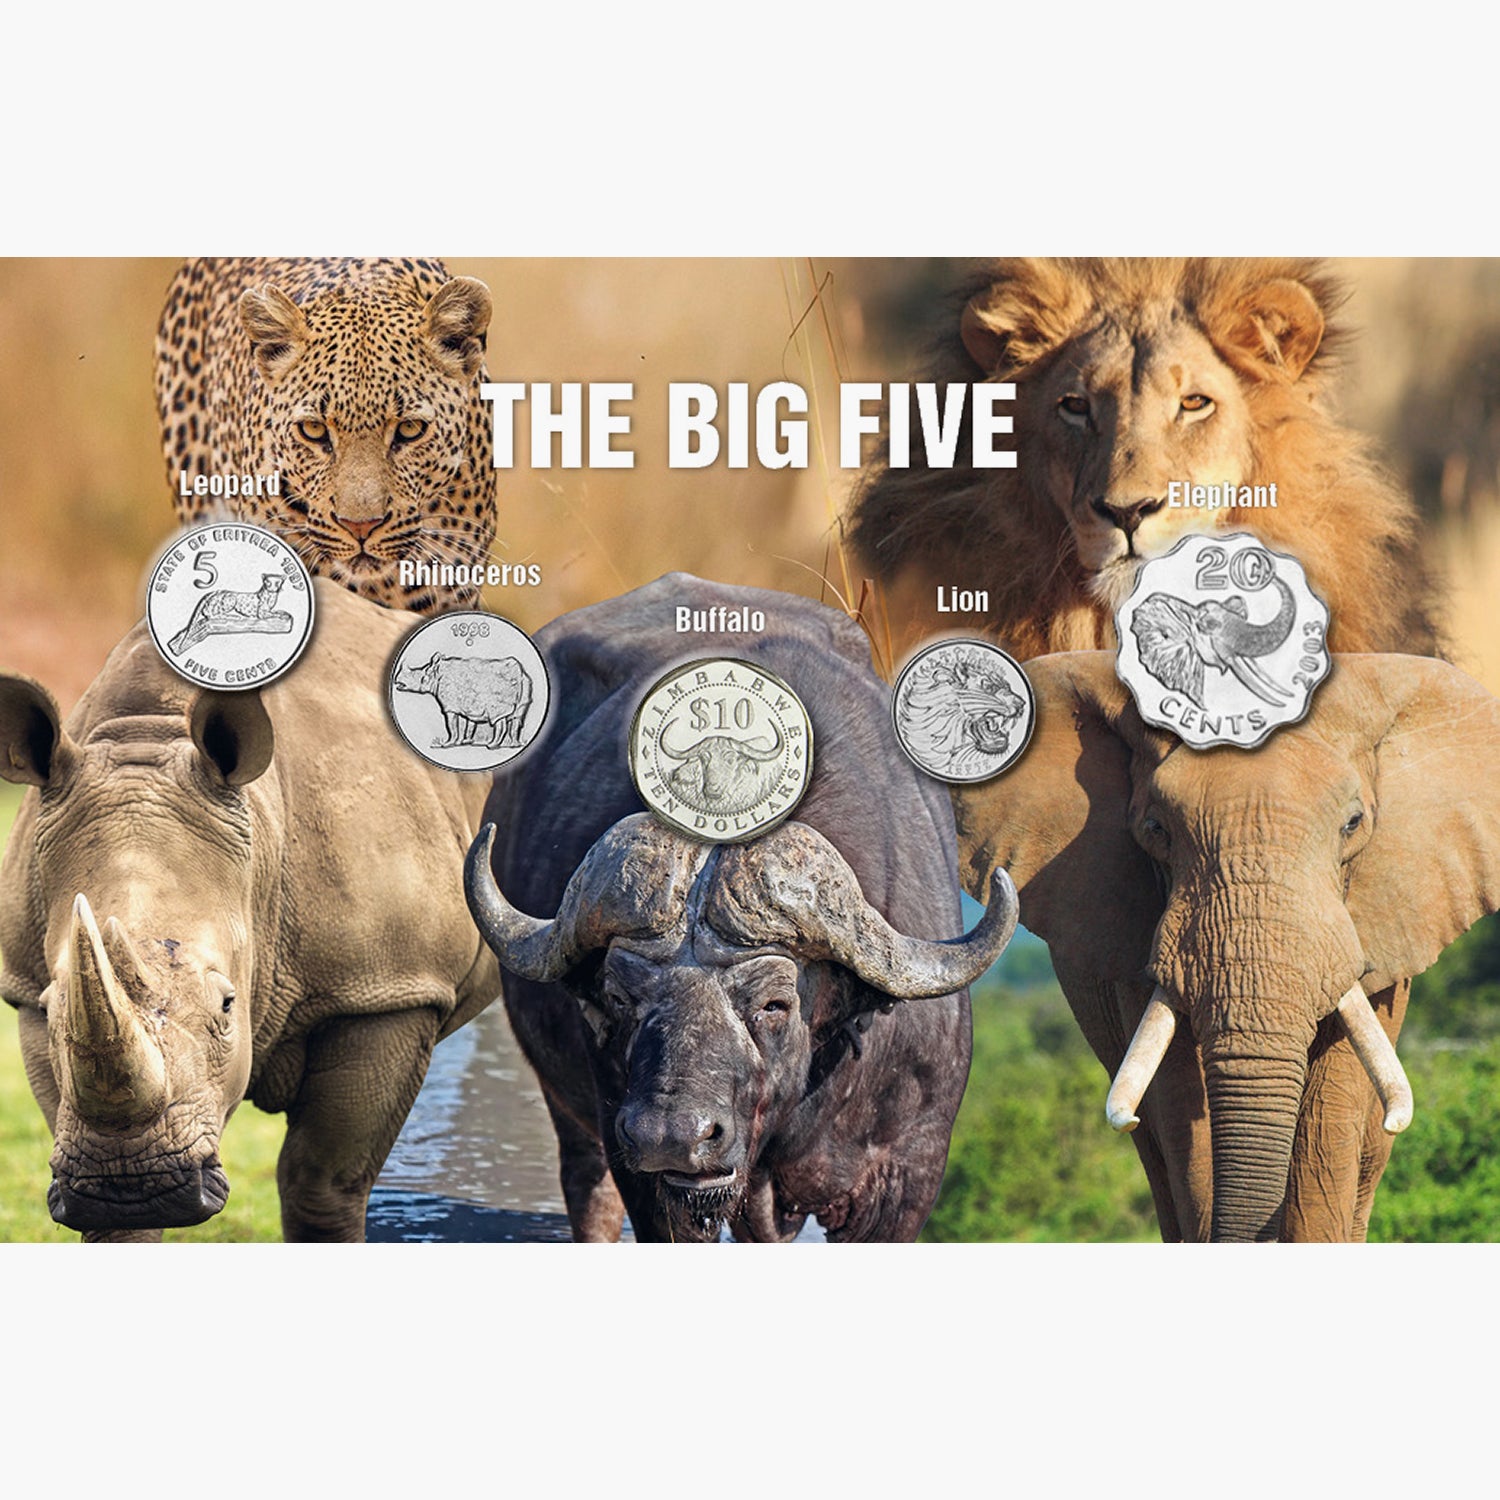 The Five - "Big Five"